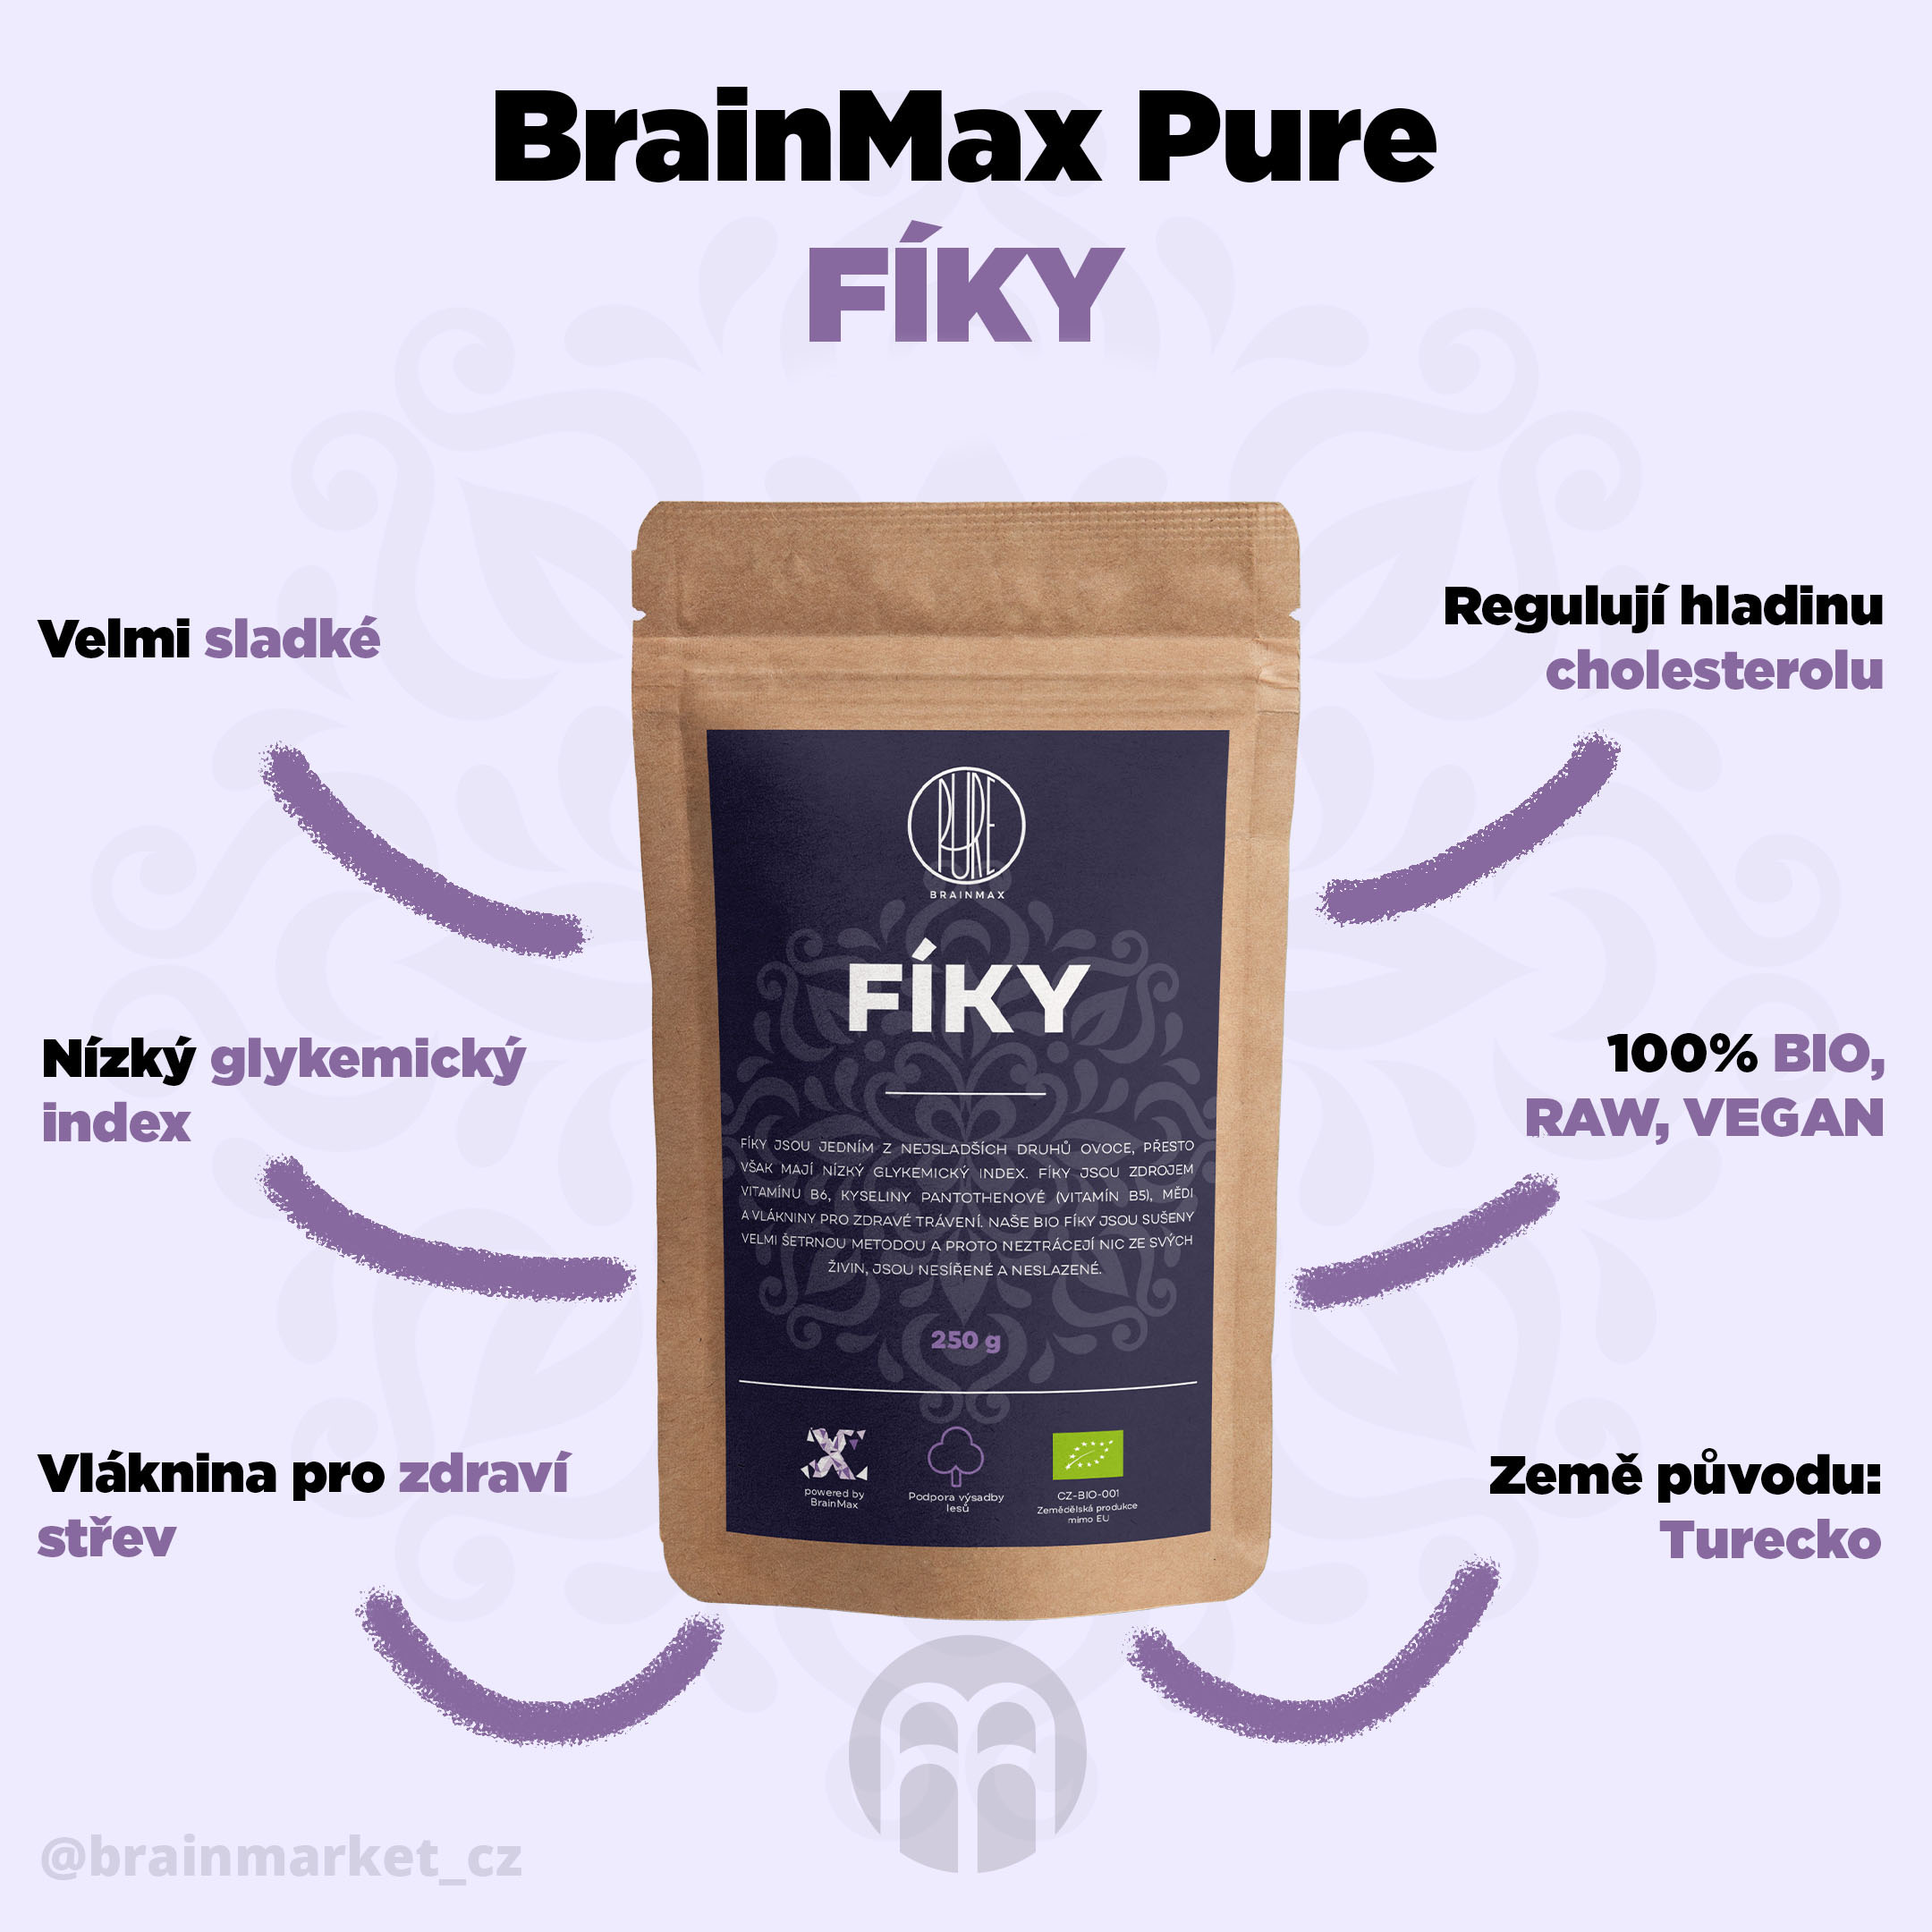 fiky-brainmaxpure-infografiky-cz (1)